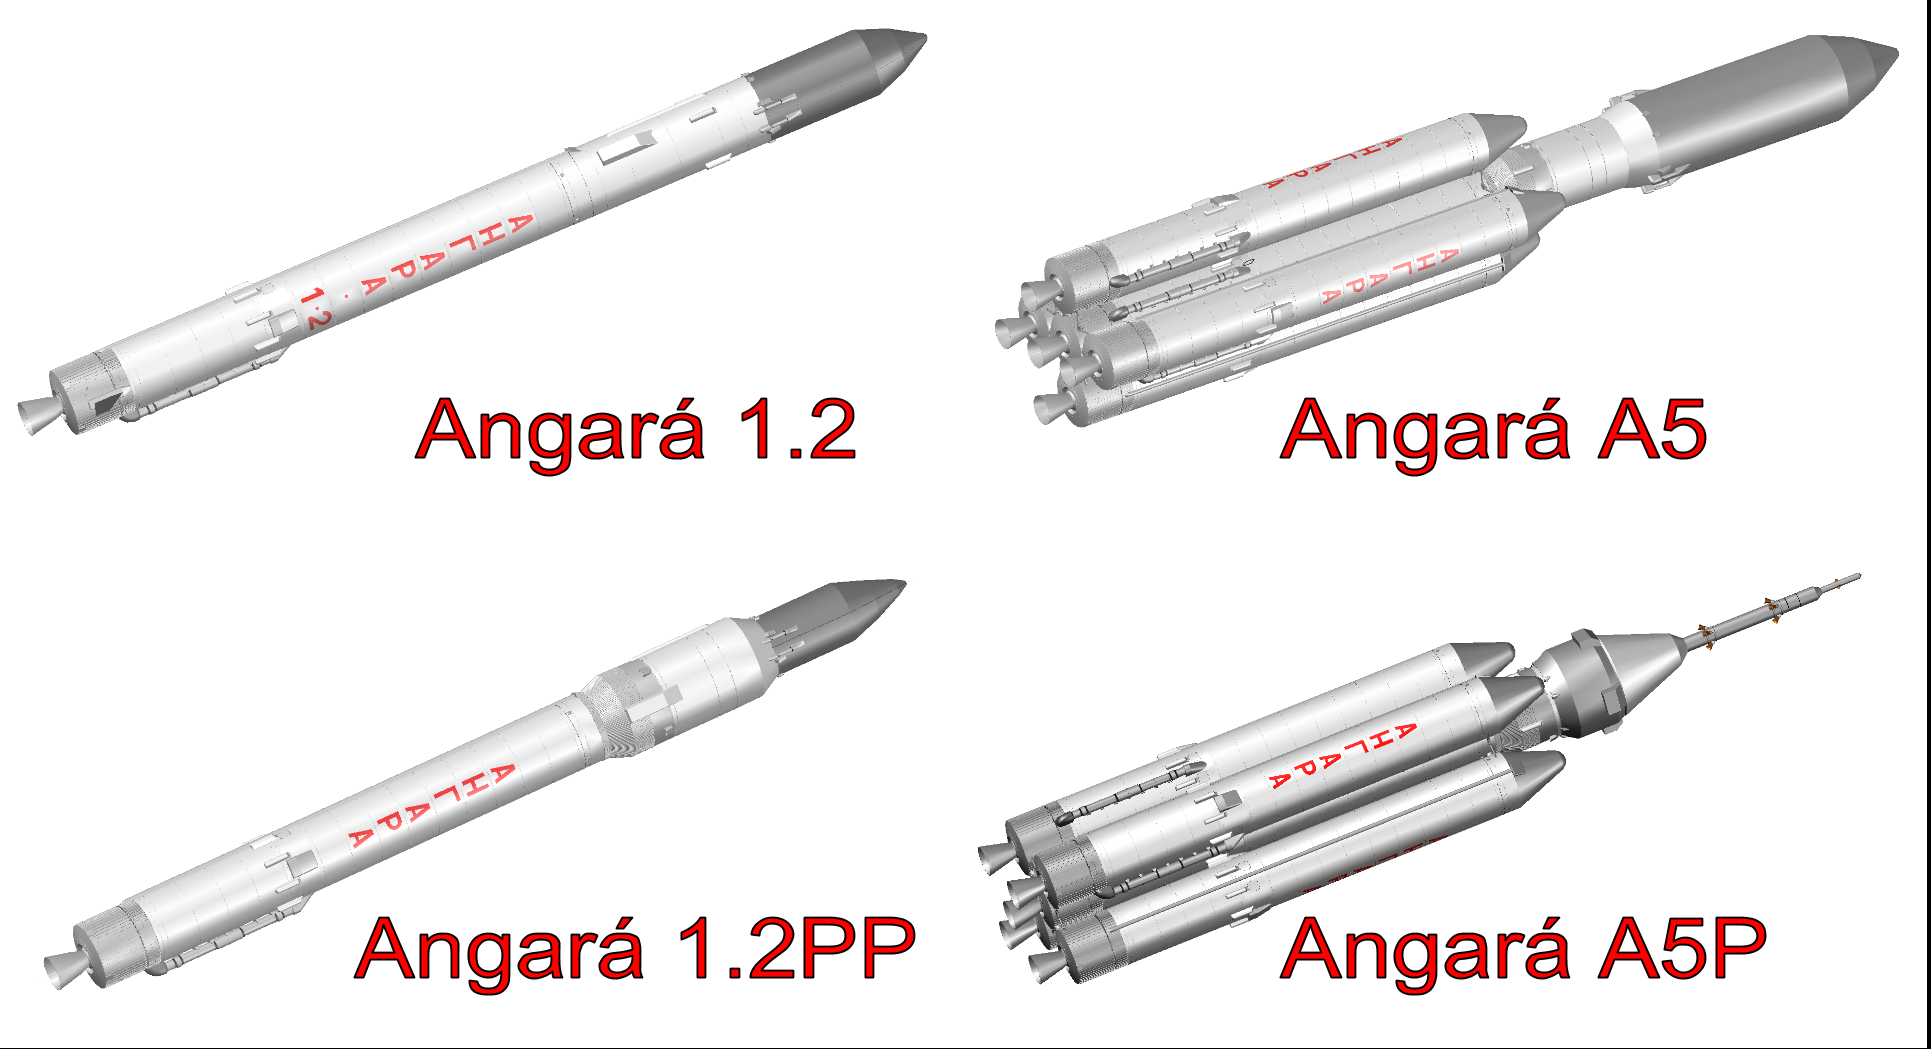 Ангара 5 ракета носитель характеристики. Ракета-носитель "Ангара-а5". Ракета Ангара а5 чертеж. Ангара 1.2 ракета-носитель чертеж. Ангара-а5 ракета-носитель характеристики.